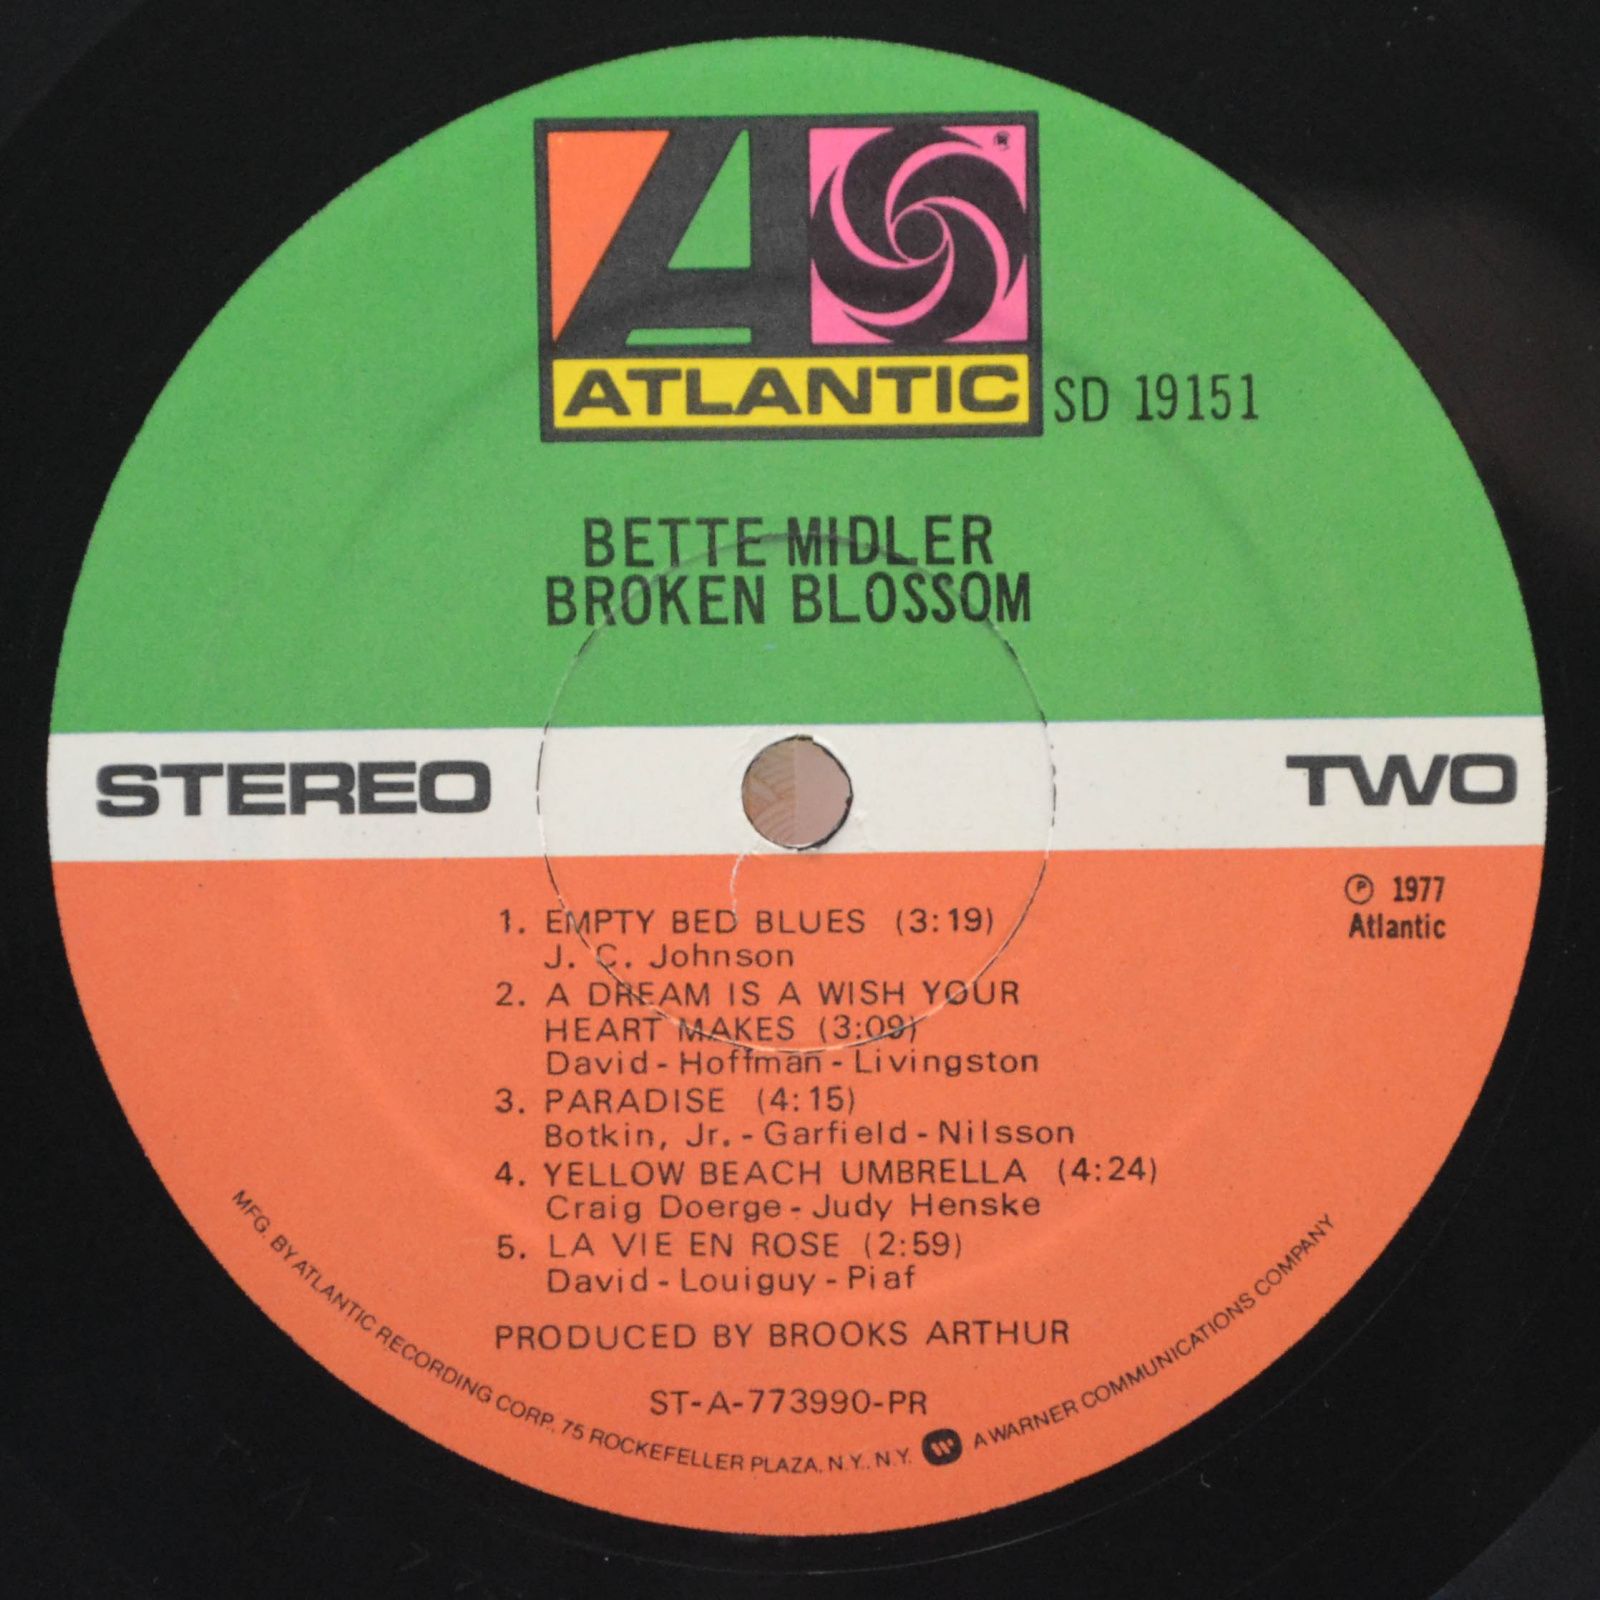 Bette Midler — Broken Blossom, 1977